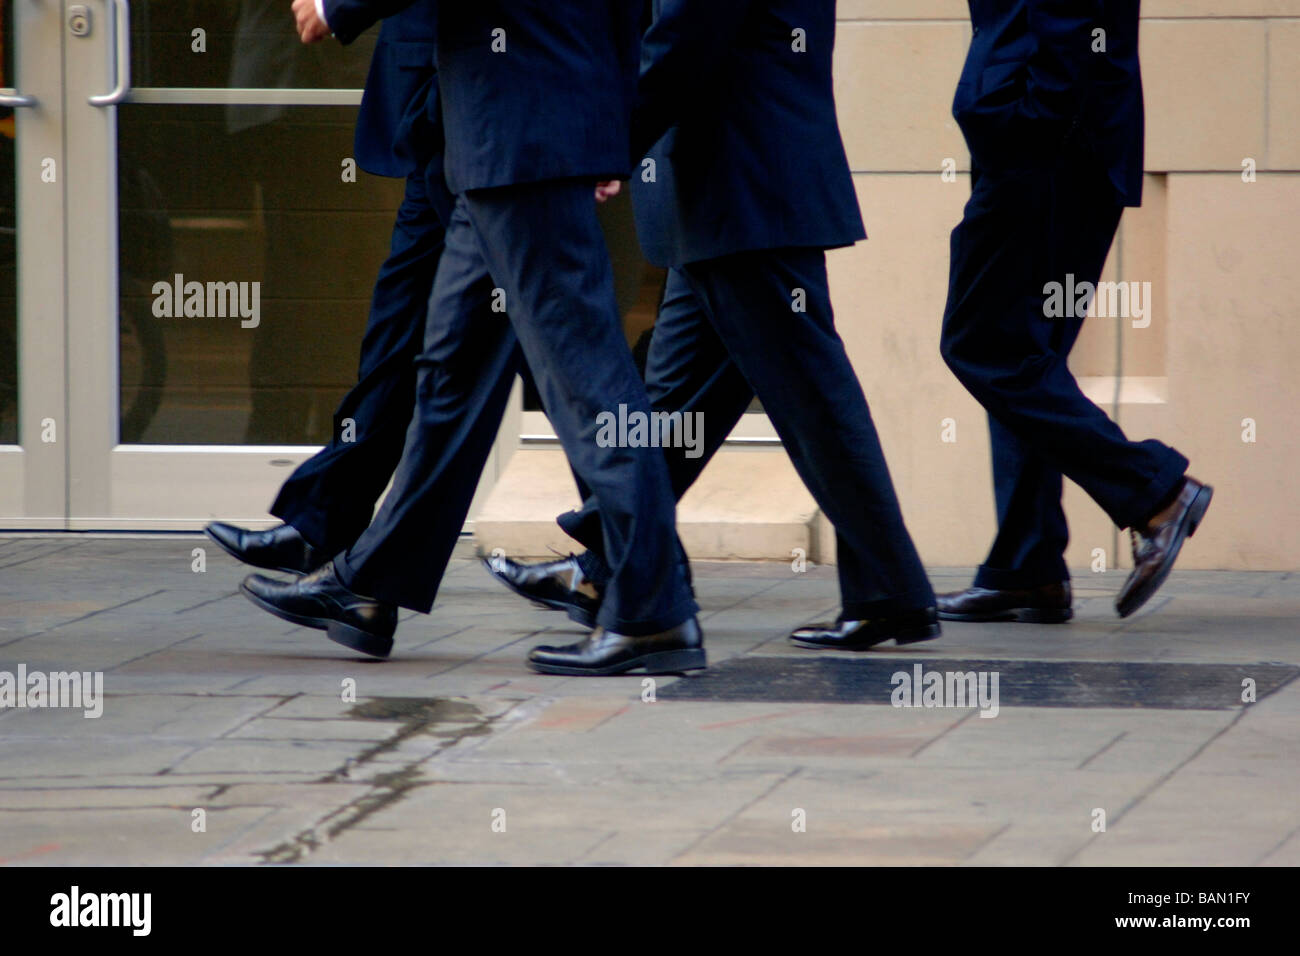 Business Männer/Banker in Business-Kleidung gehen in flottem Tempo auf einer Stadtstraße, als ein Team während eines nicht Schritt ist Stockfoto